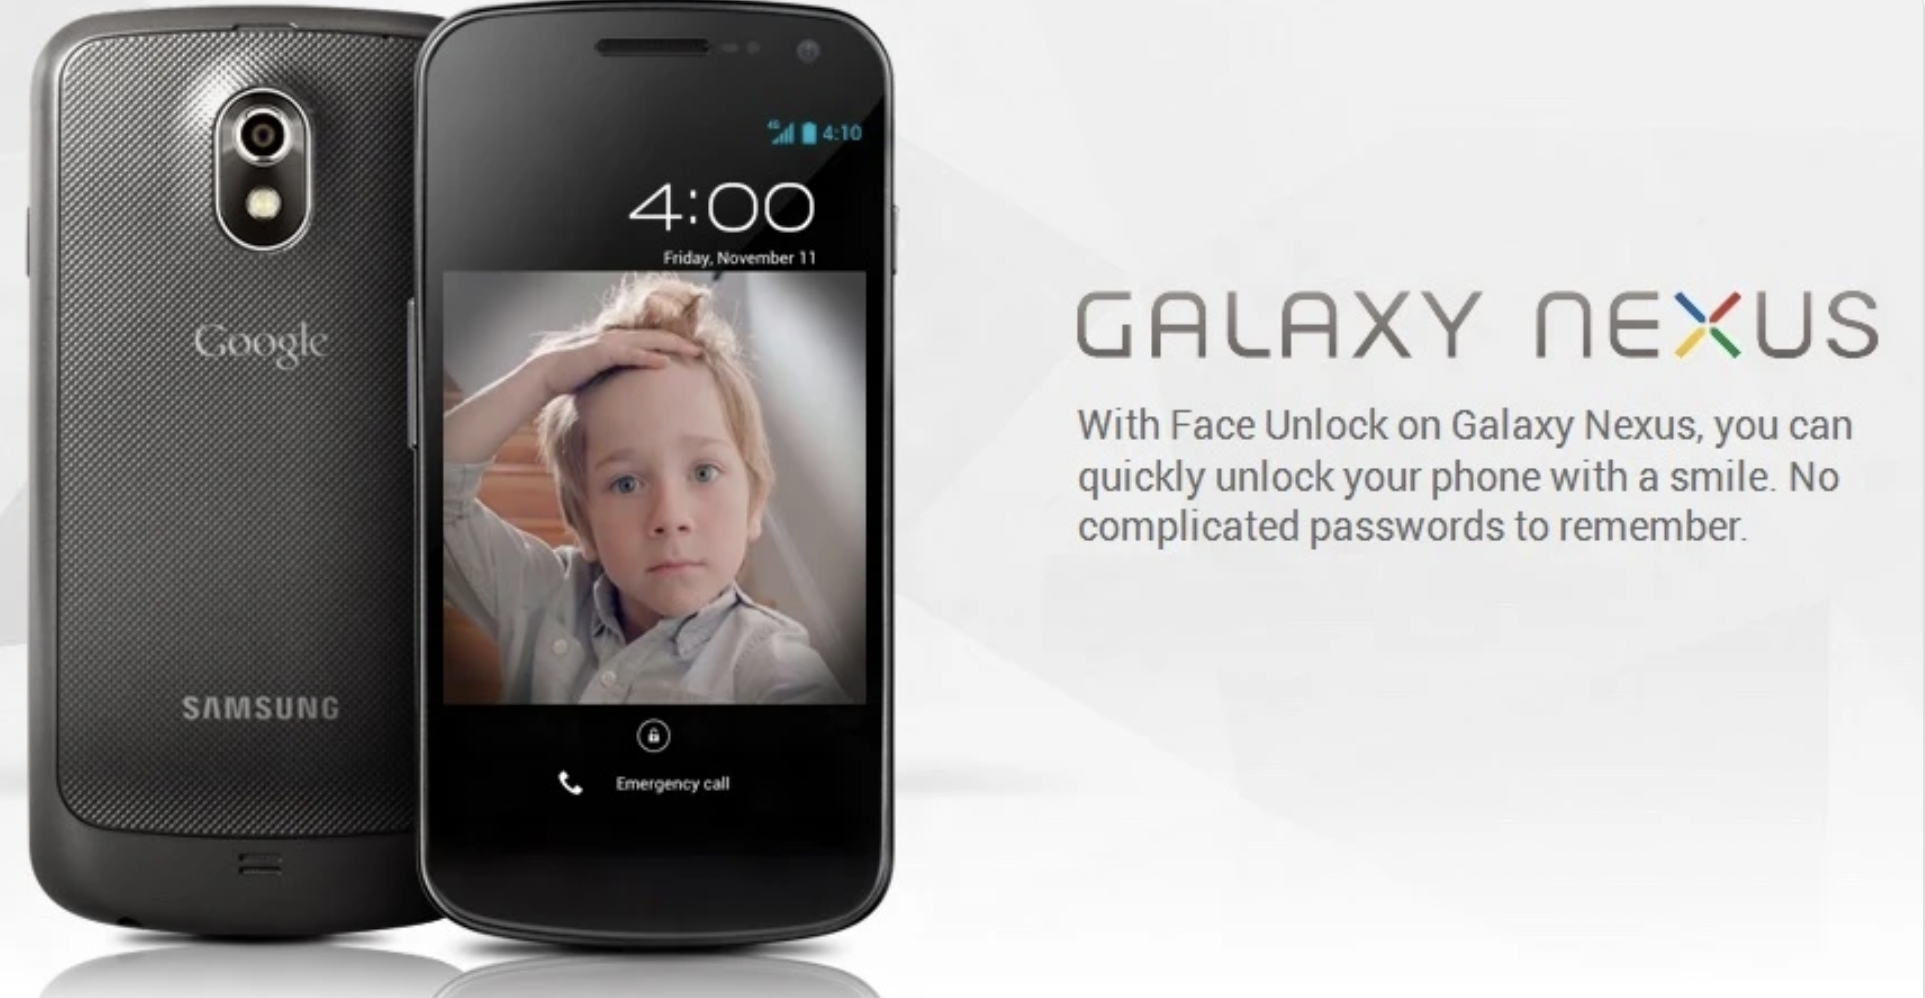 Galaxy Nexus 2011 đã giới thiệu Mở khóa bằng khuôn mặt dưới dạng tính năng của Android 4.0. Ảnh chụp màn hình